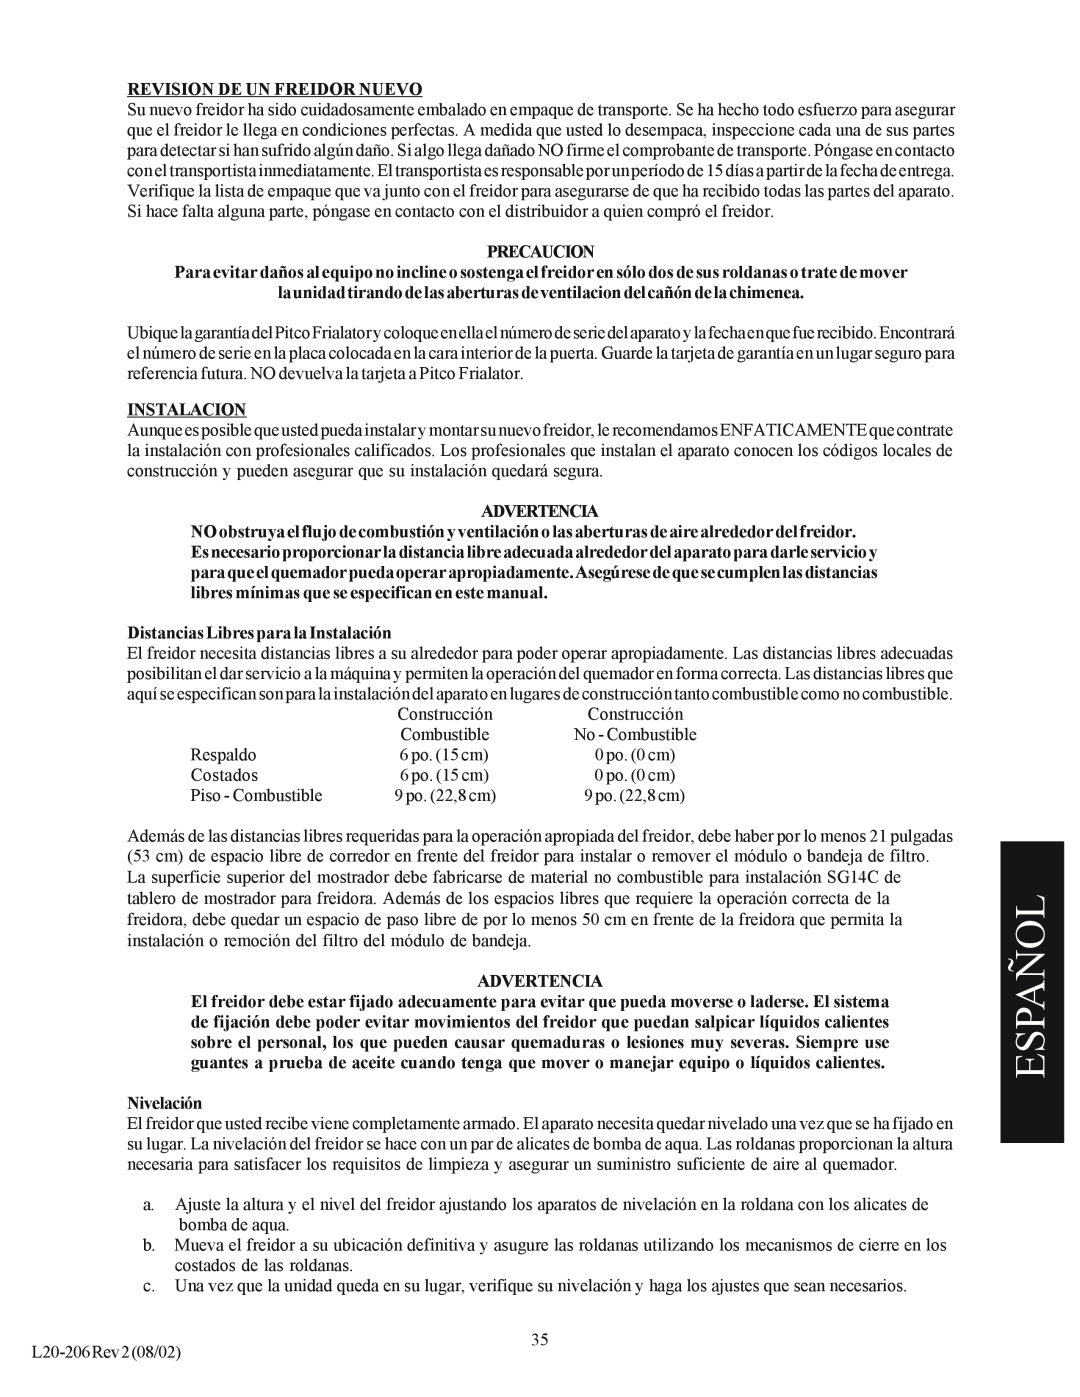 Pitco Frialator SG operation manual Español, Revision De Un Freidor Nuevo, Precaucion, Instalacion, Advertencia, Nivelación 